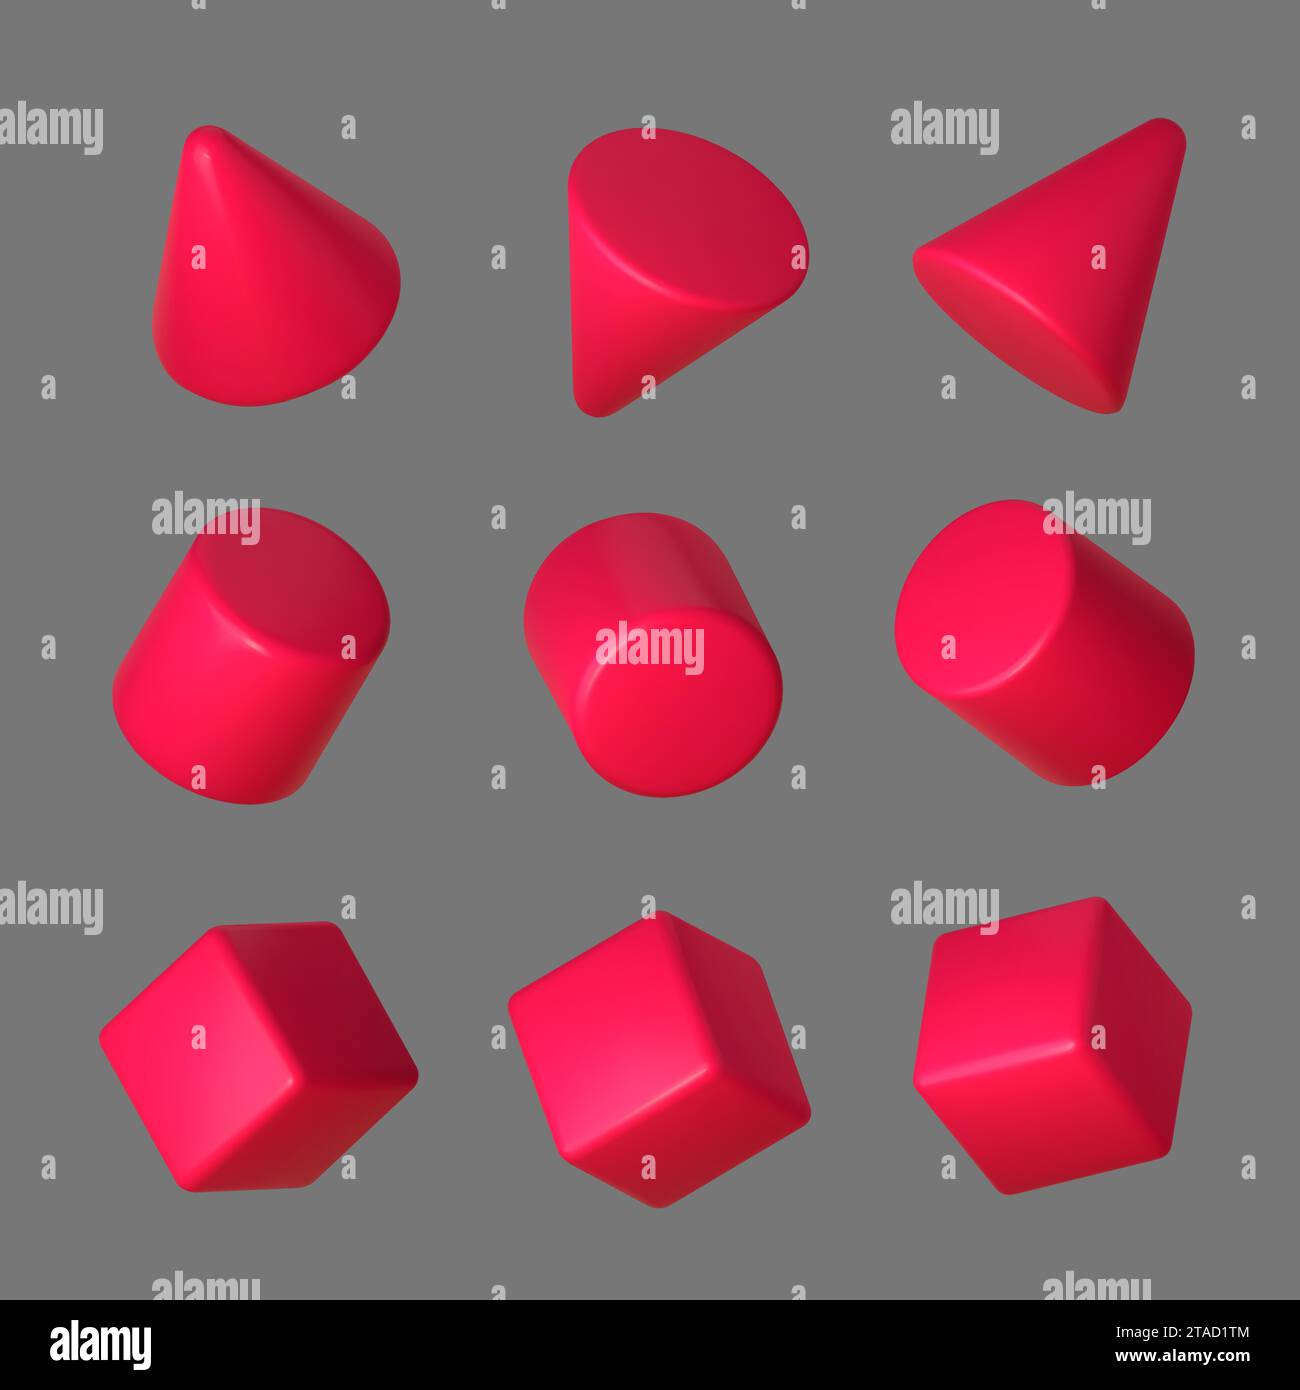 3d del set di forme geometriche rosa. Cubo geometrico rosso realistico, cono e cilindro in prospettiva isolati su sfondo grigio. Illustrazione vettoriale. Illustrazione Vettoriale